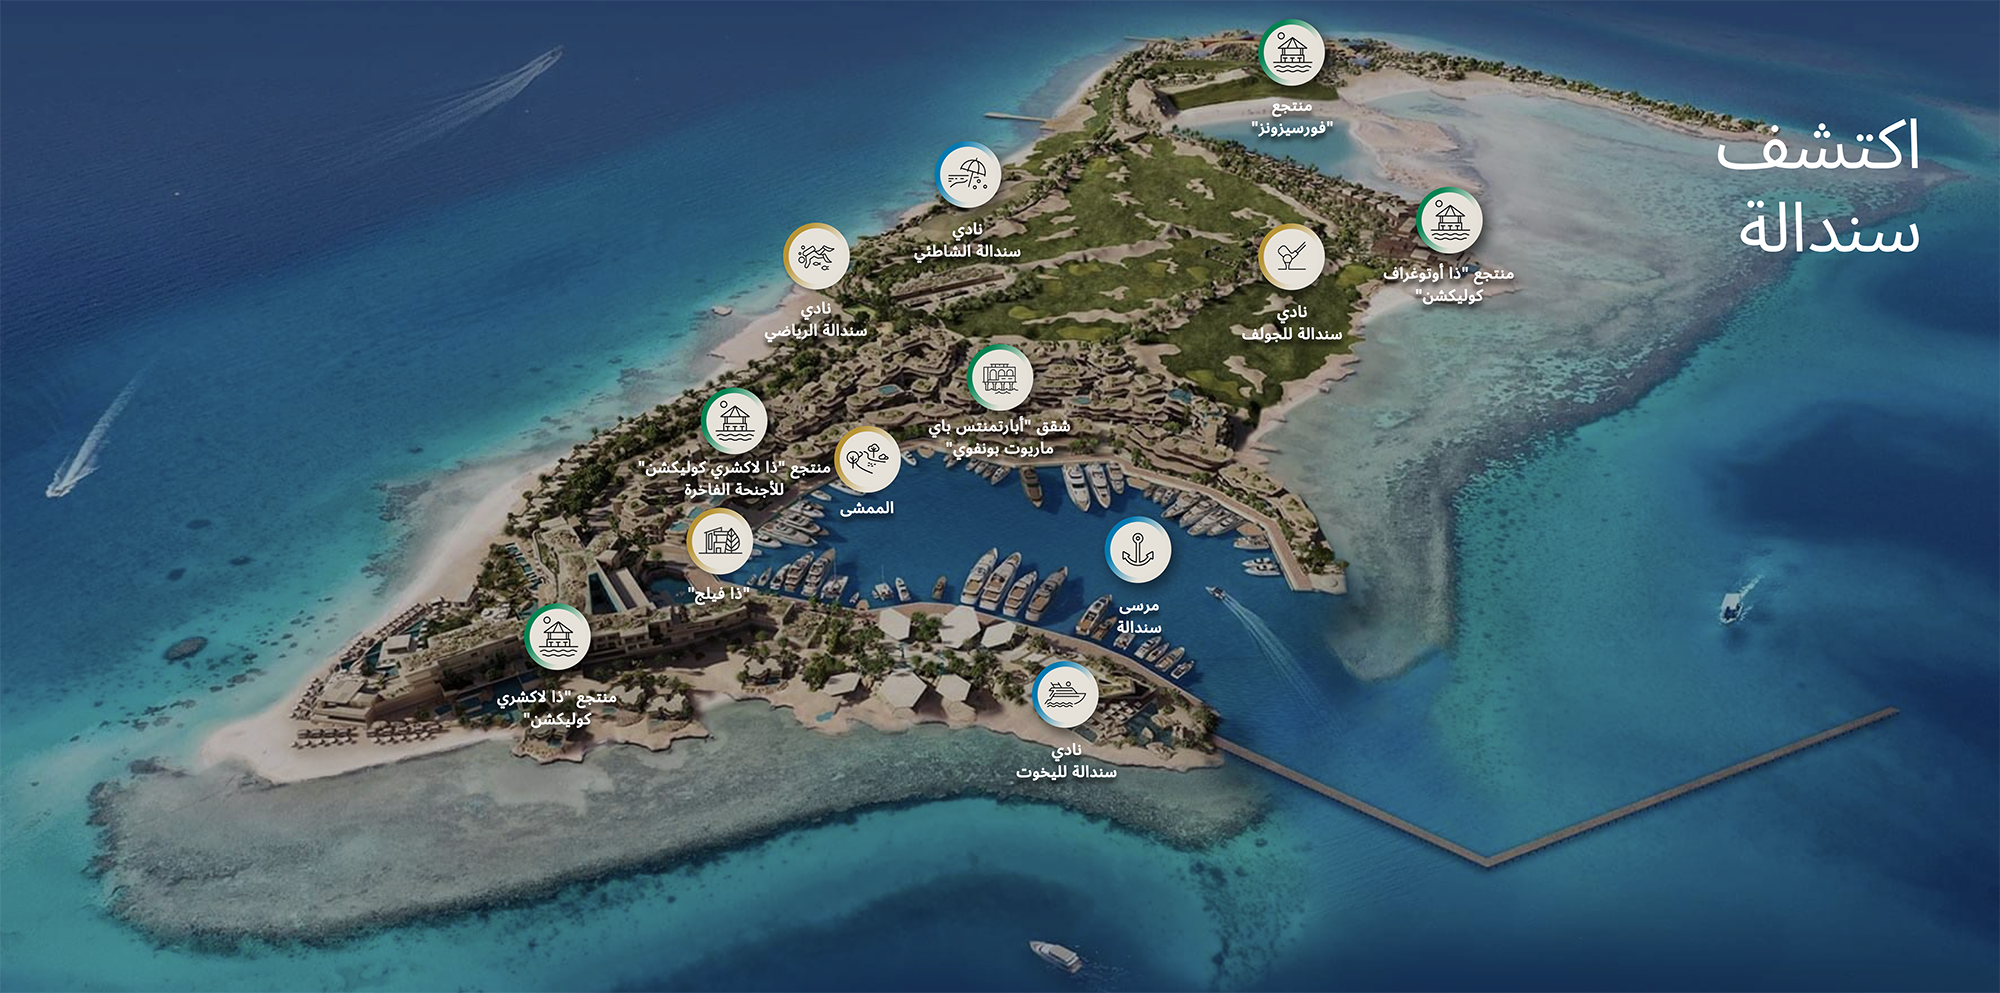 خريطة جزيرة سندالة، إحدى الجزر الفاخرة في البحر الأحمر، وإنفوجرافيك توضح وسائل الراحة المتنوعة